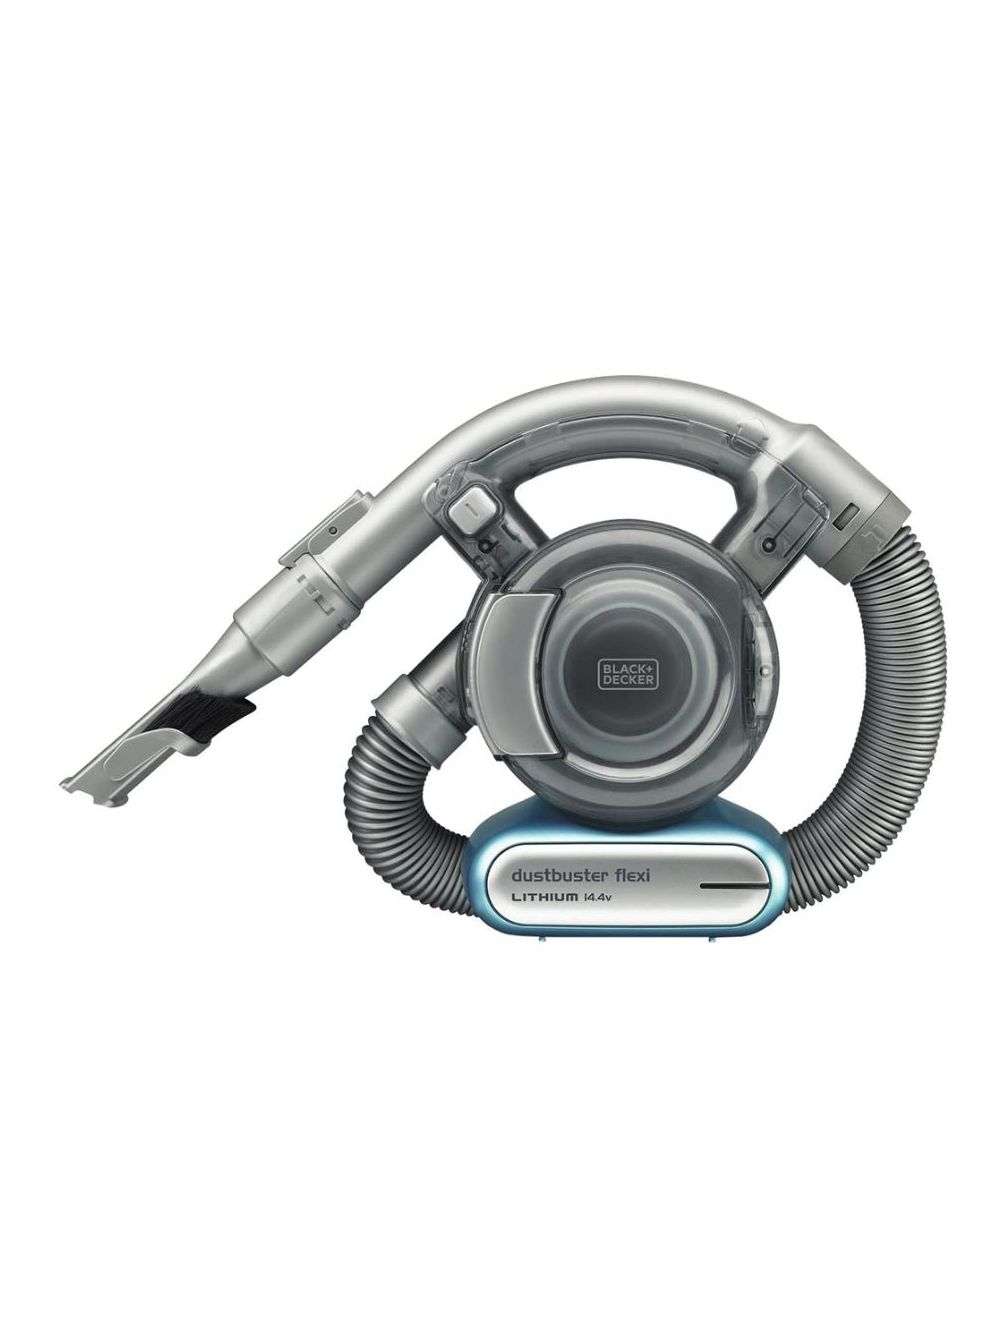 Black & Decker 14.4V Car Vacuum with Pet Tool, Blue/Grey - PD1420LP-GB-PD1420LP-GB